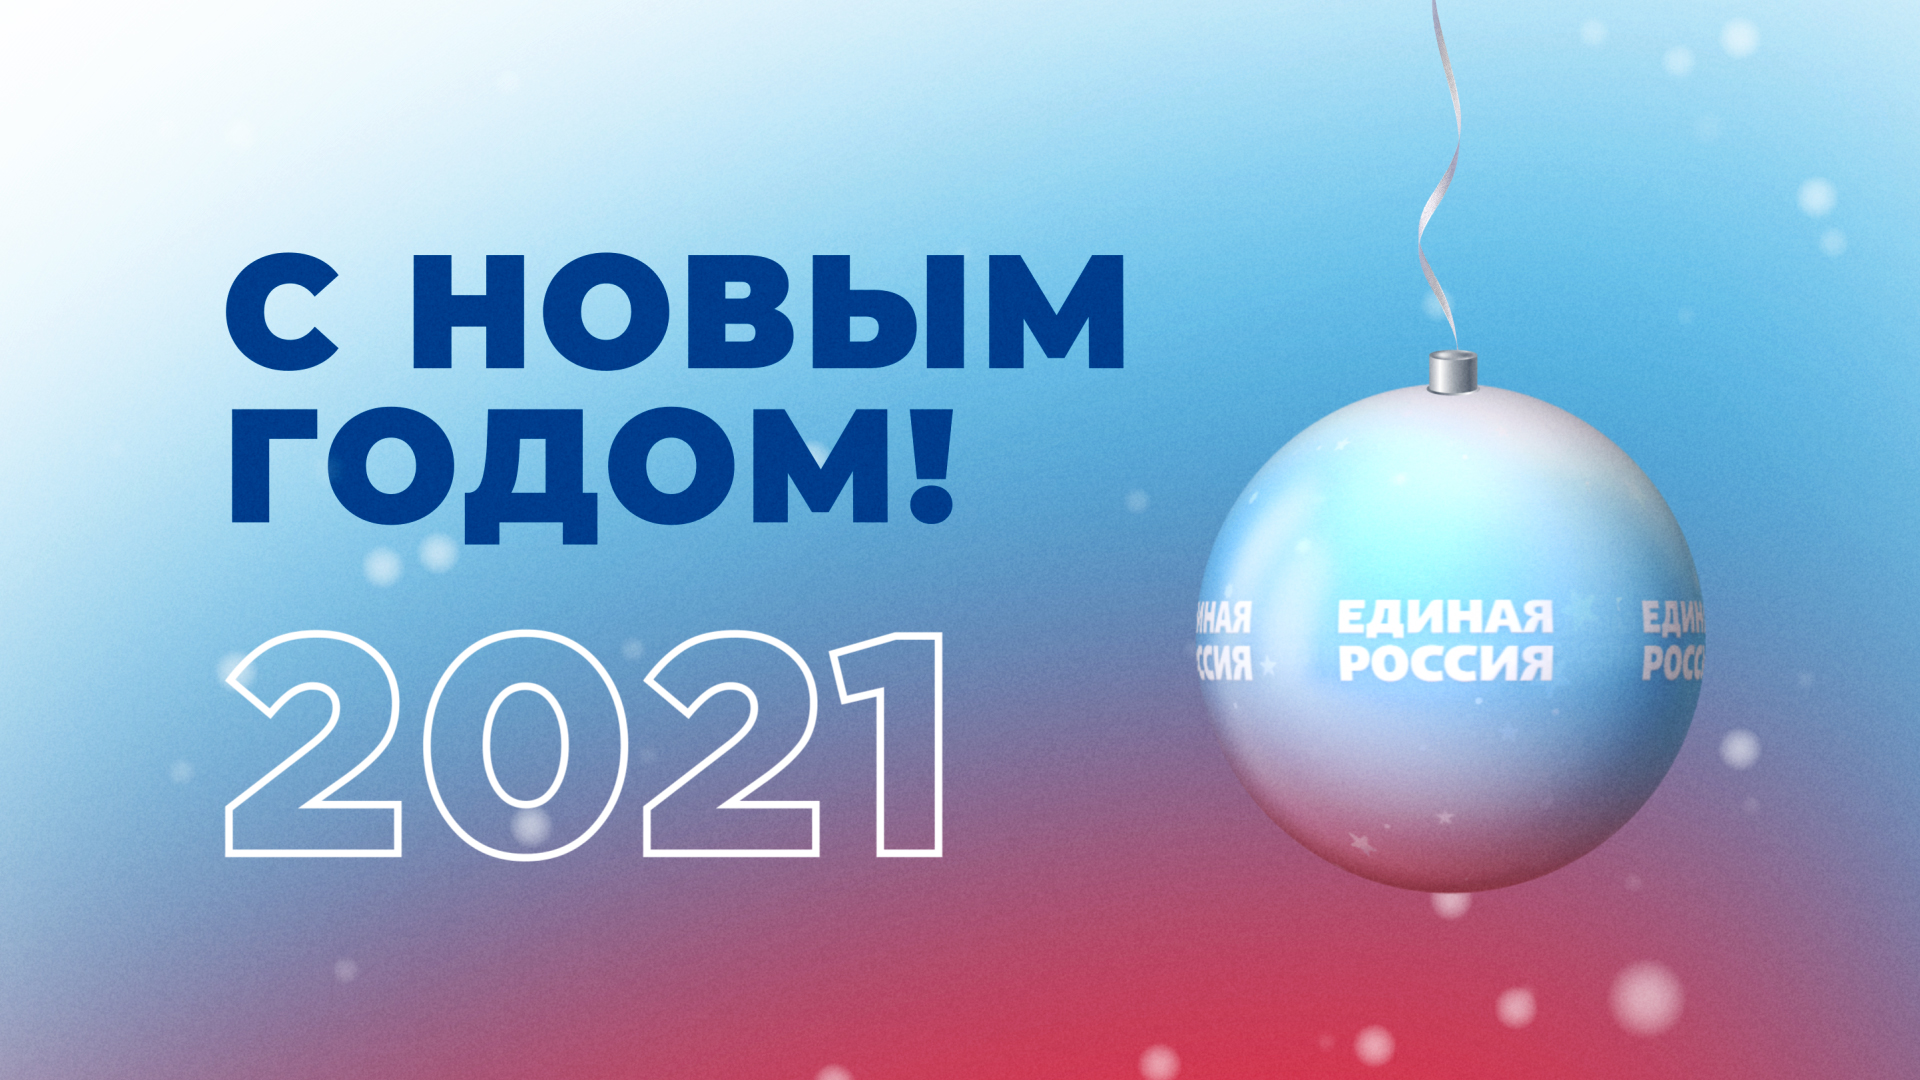 Андрей Турчак поздравил
однопартийцев с Новым годом и
Рождеством